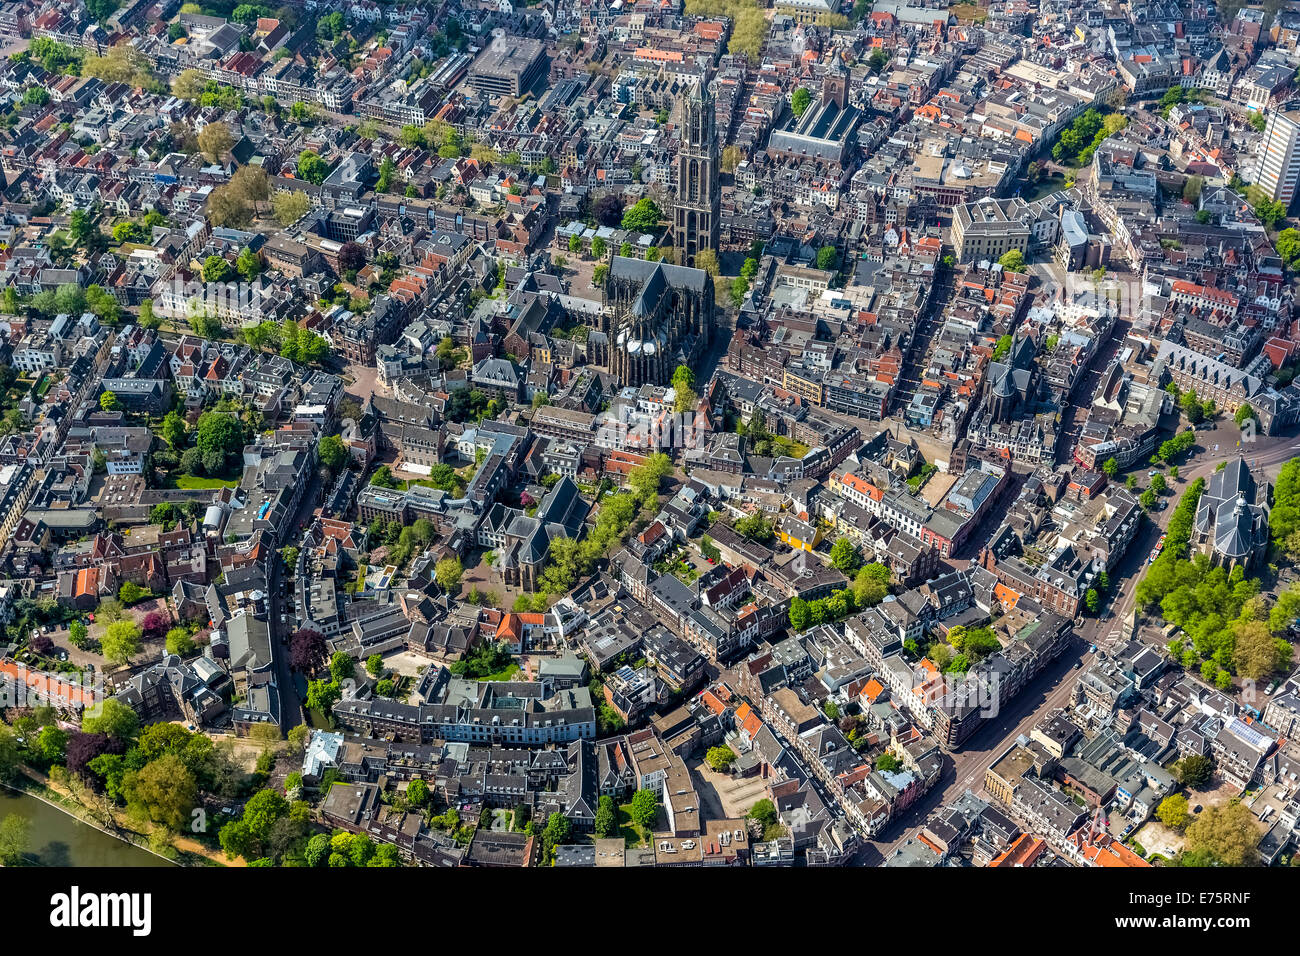 Vue aérienne du centre-ville, avec la Cathédrale Saint-Martin ou l'église Dom, Domkerk, Utrecht, dans la province d'Utrecht, Pays-Bas Banque D'Images